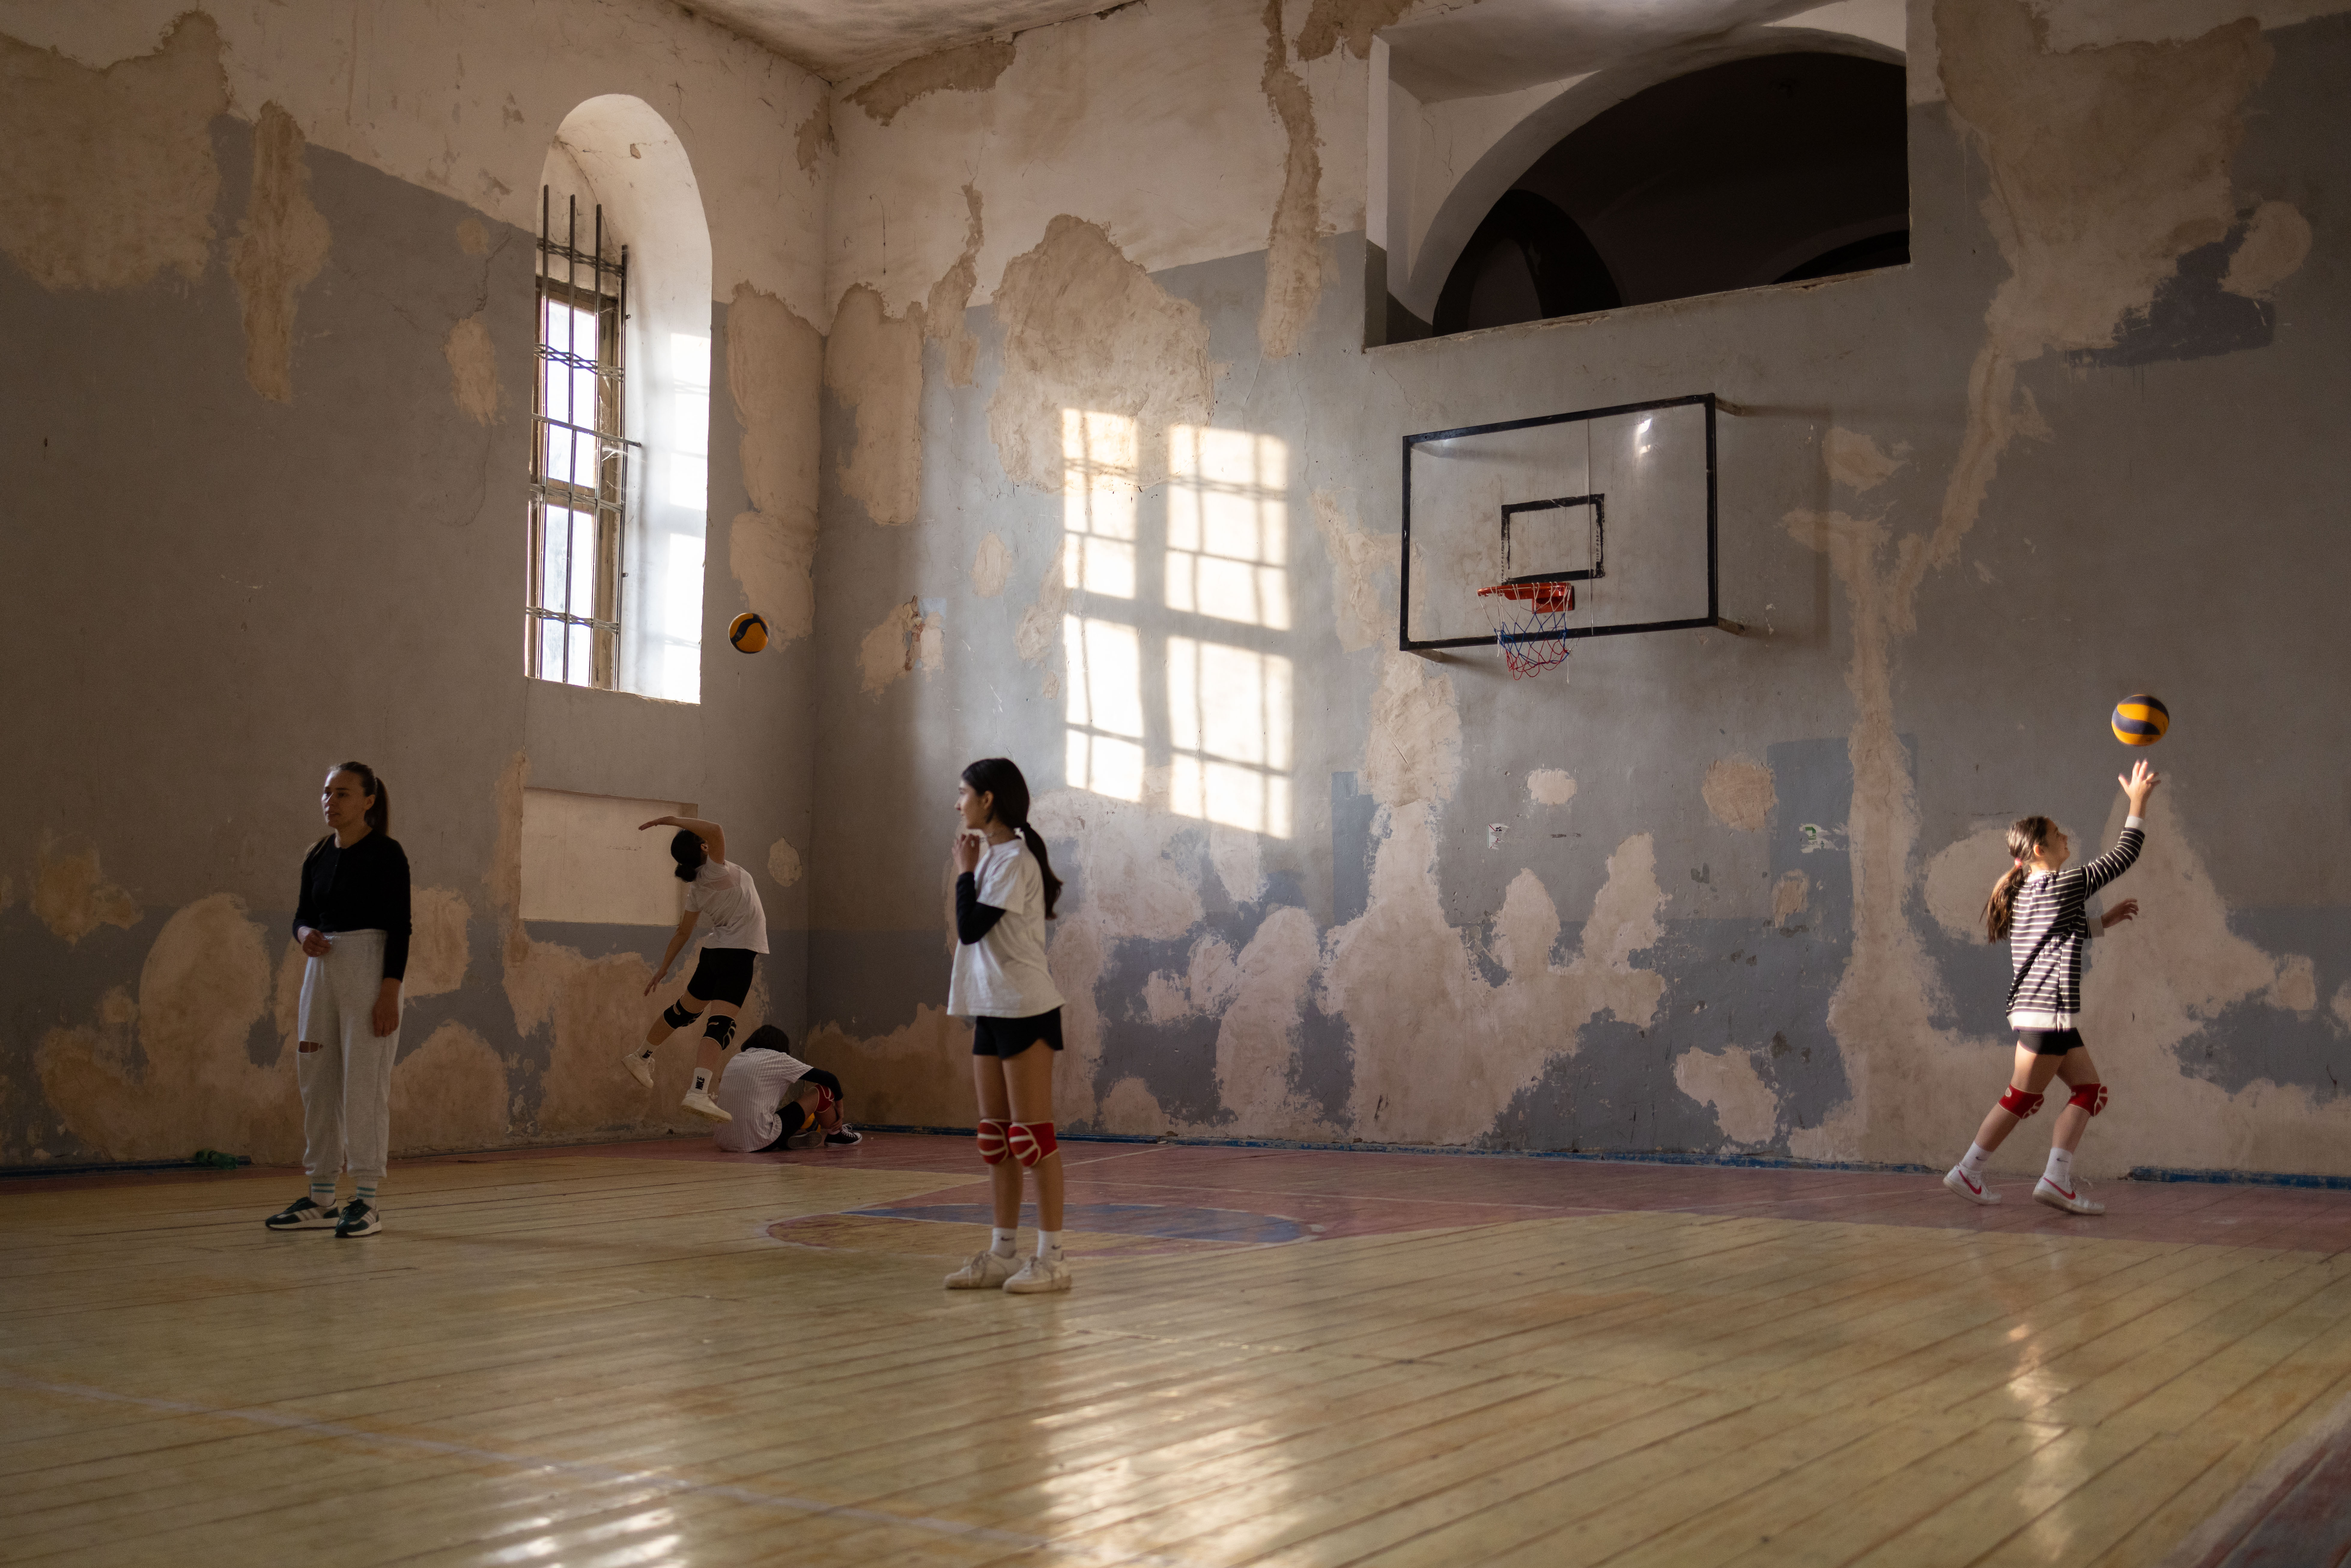 In der ehemaligen Kirche trainieren mittlerweile Jugendliche Handball. © Arthur Bauer